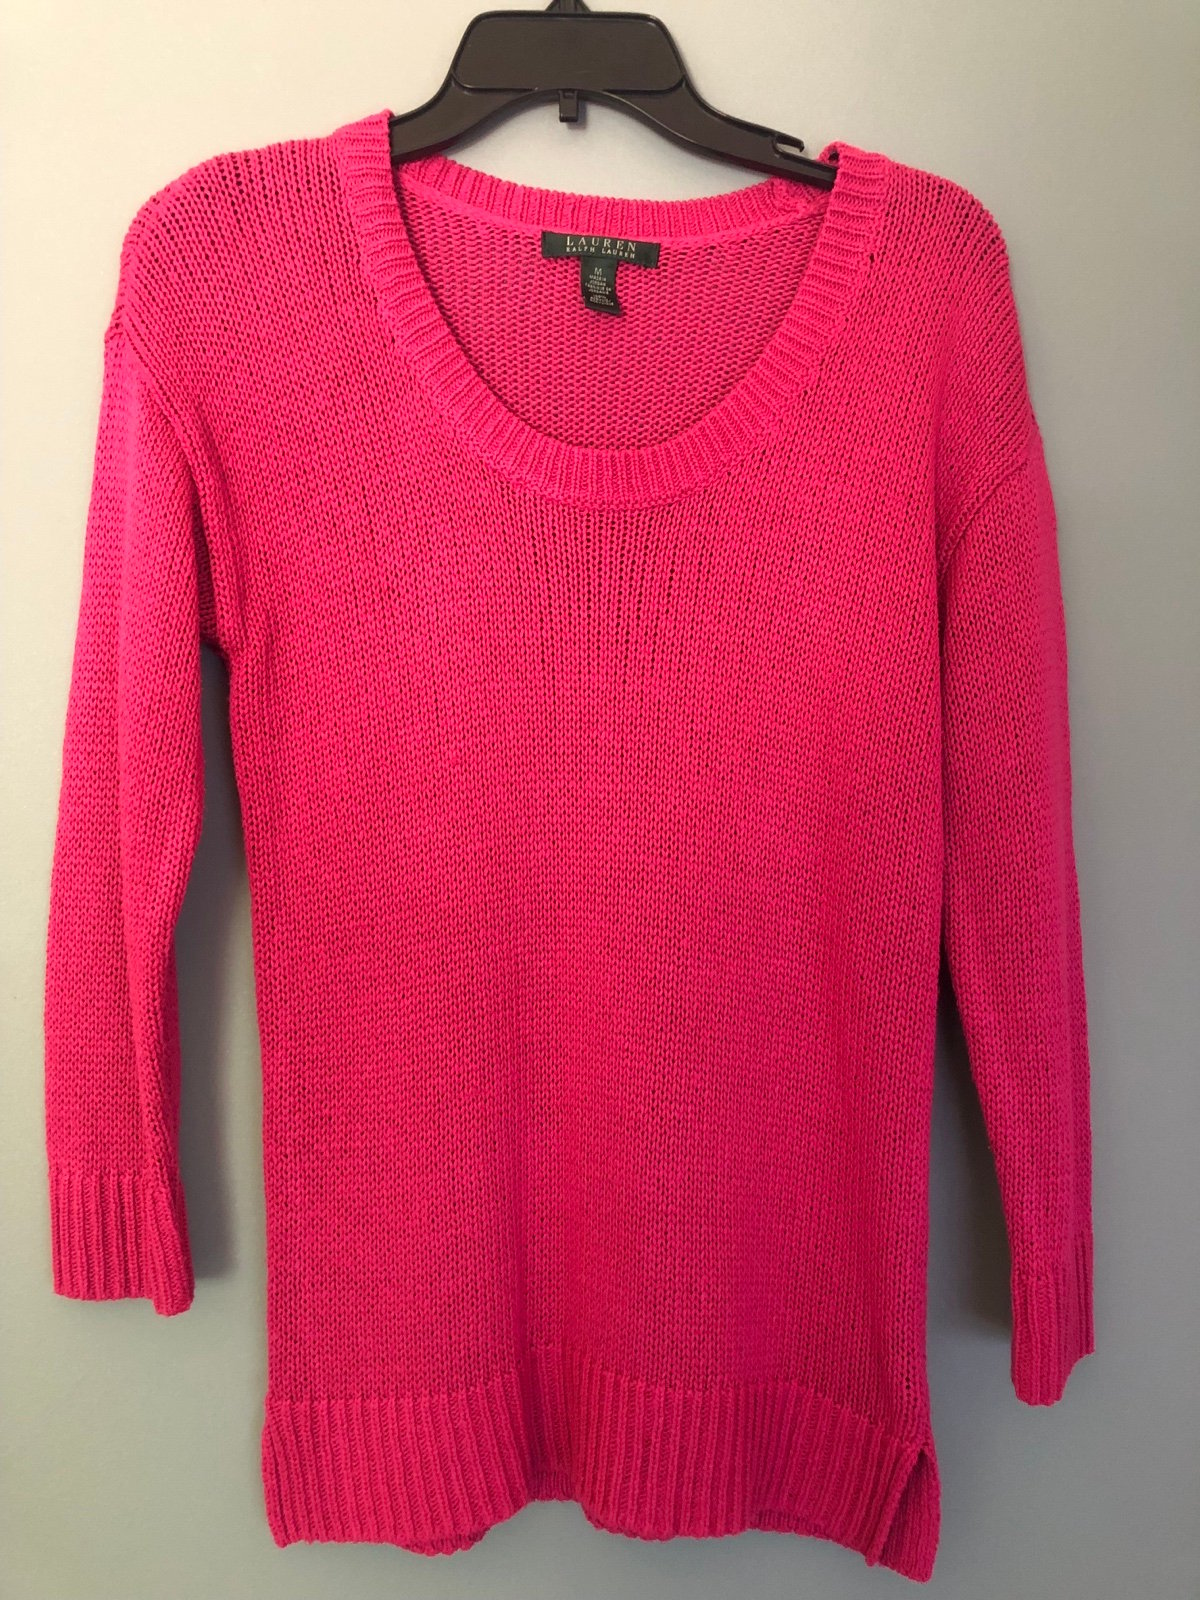 Fashion Lauren Ralph Lauren Size Medium Pink 3/4 Sleeve